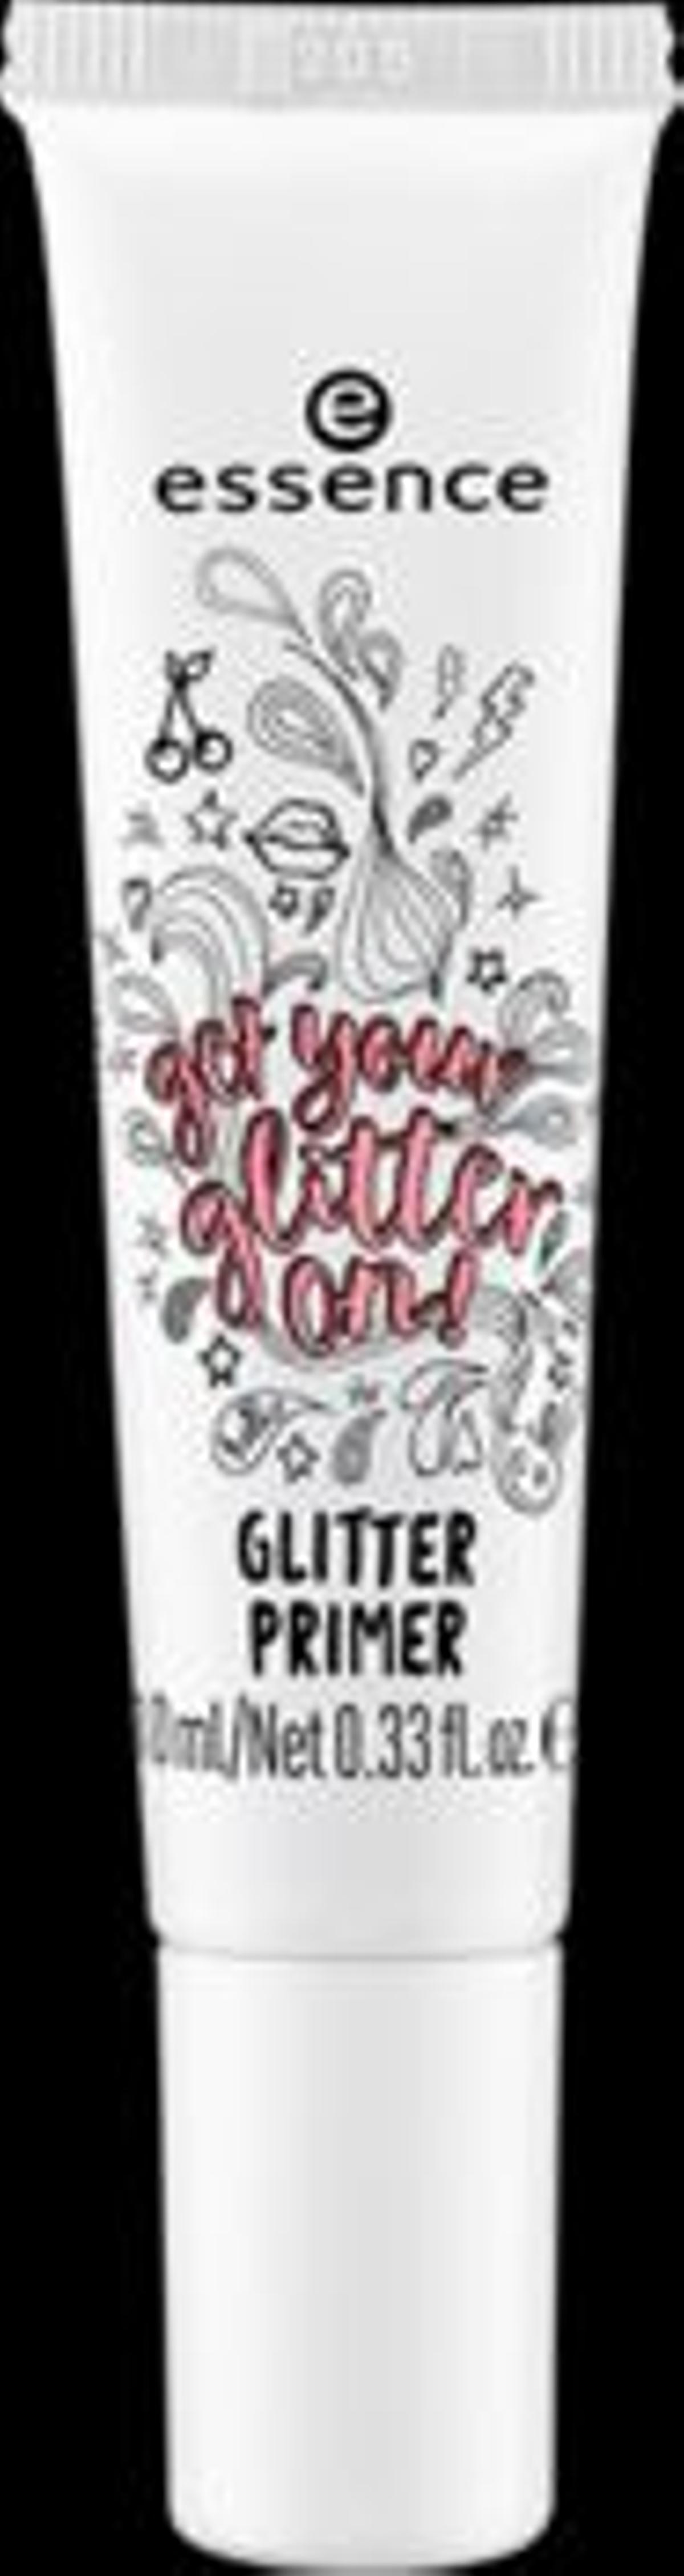 Prebase para glitter Get your Glitter on! de Essence (Precio: C. P. V.)